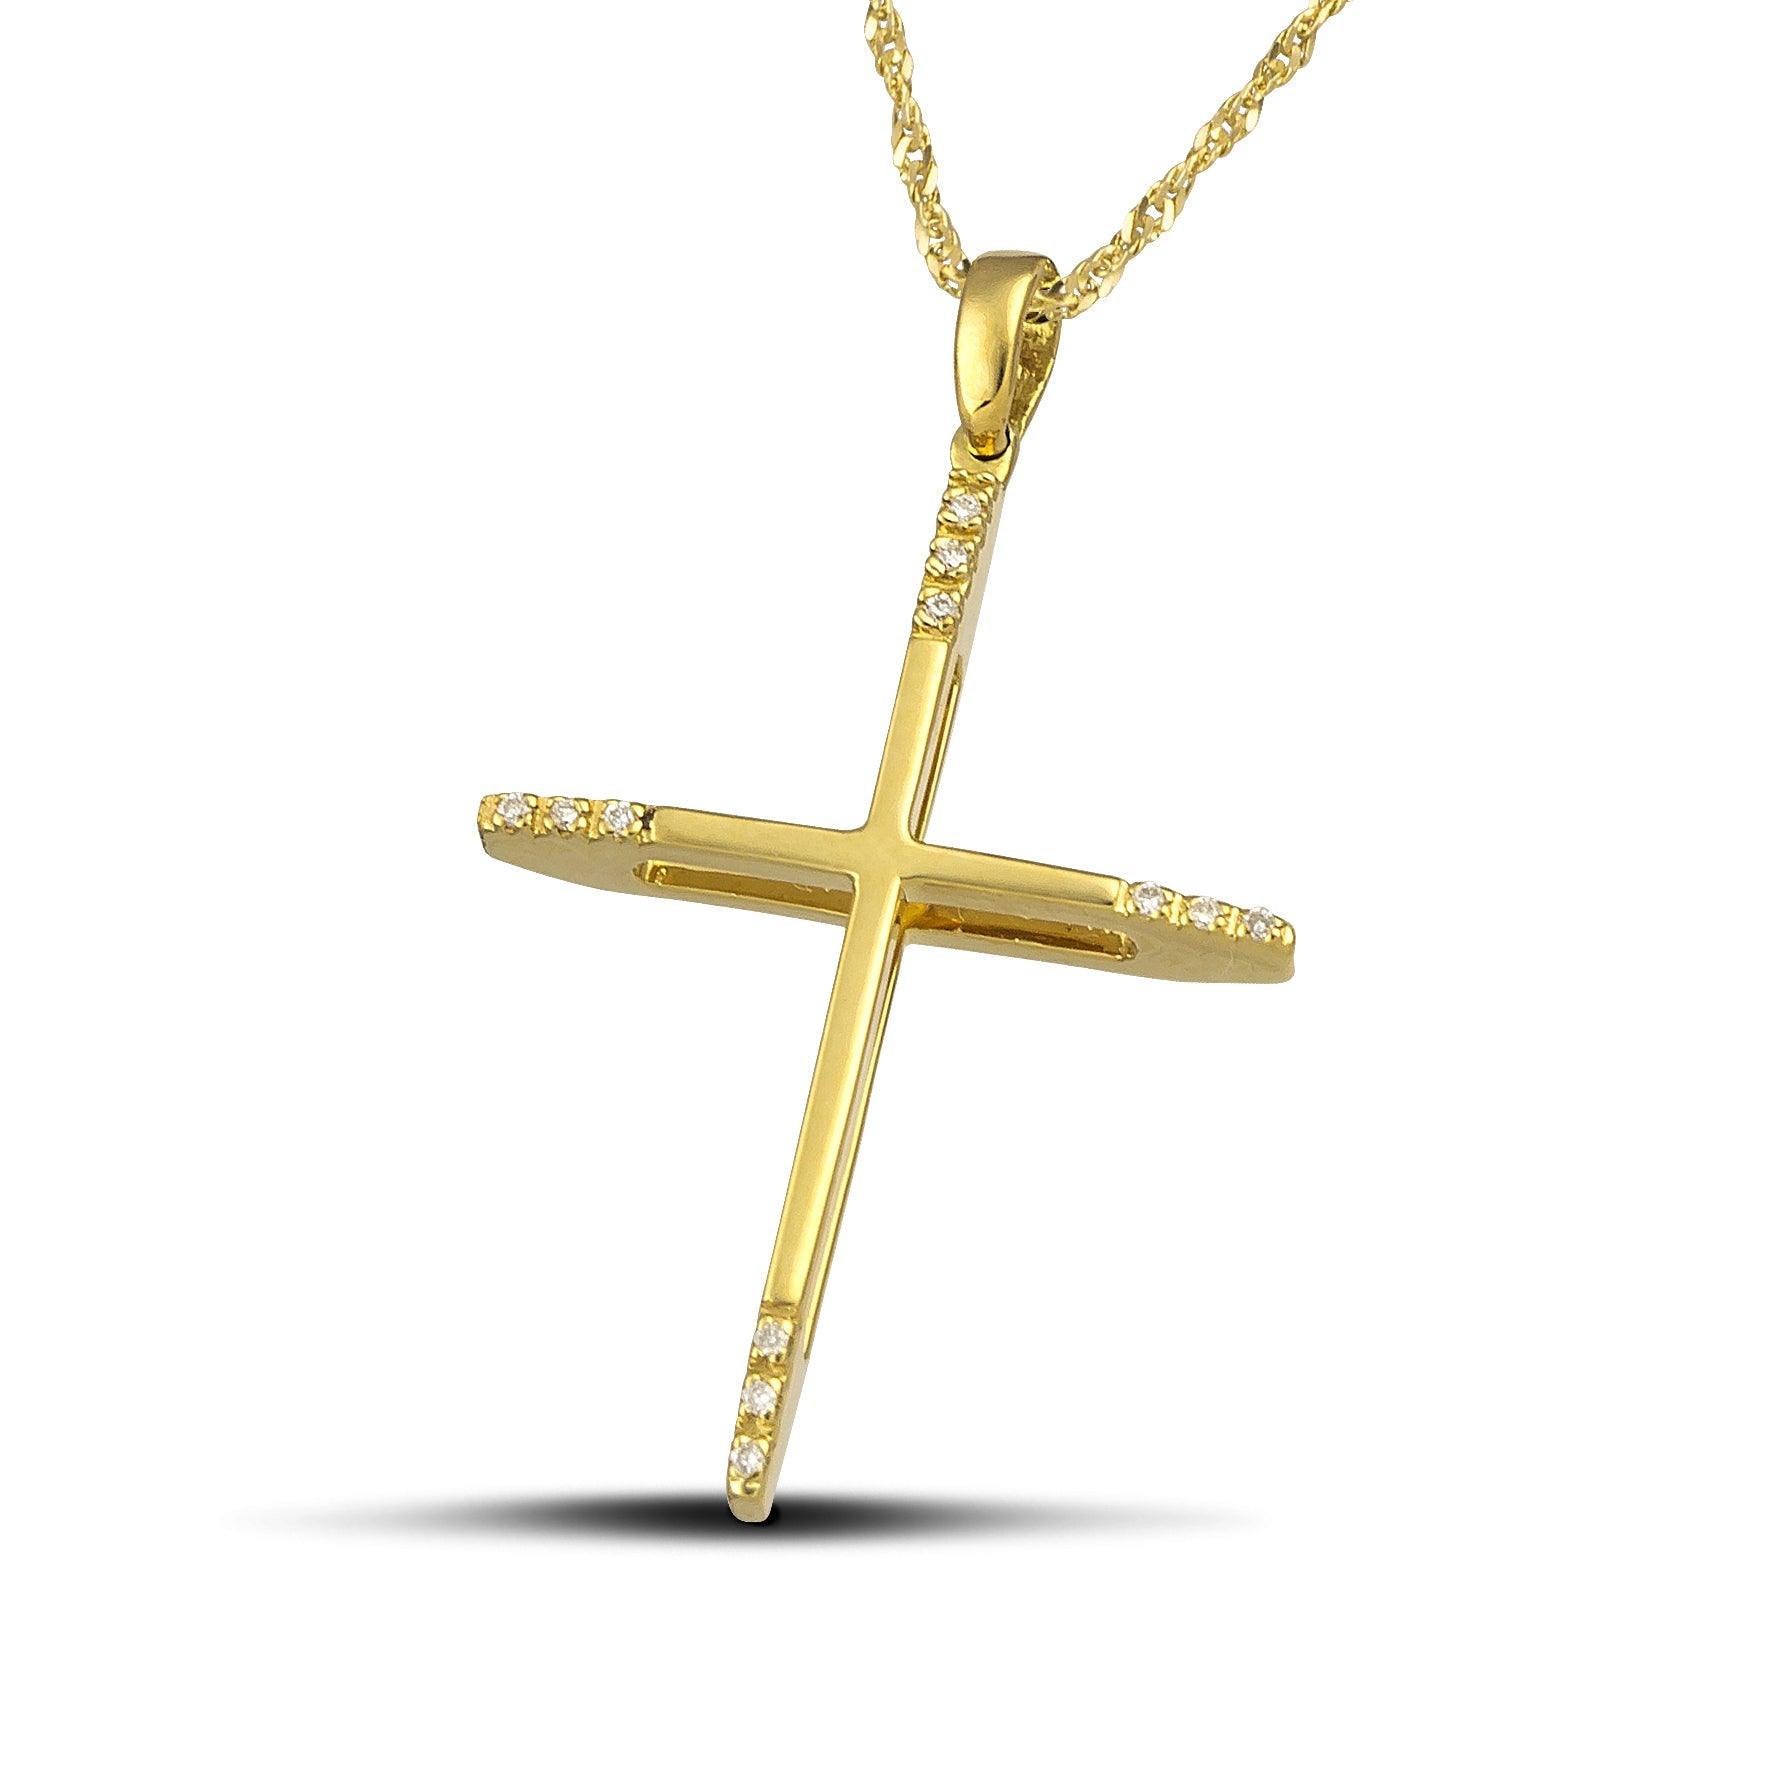 Γυναικείος σταυρός διπλής όψης από χρυσό Κ18 με διαμάντια και στριφτή αλυσίδα.